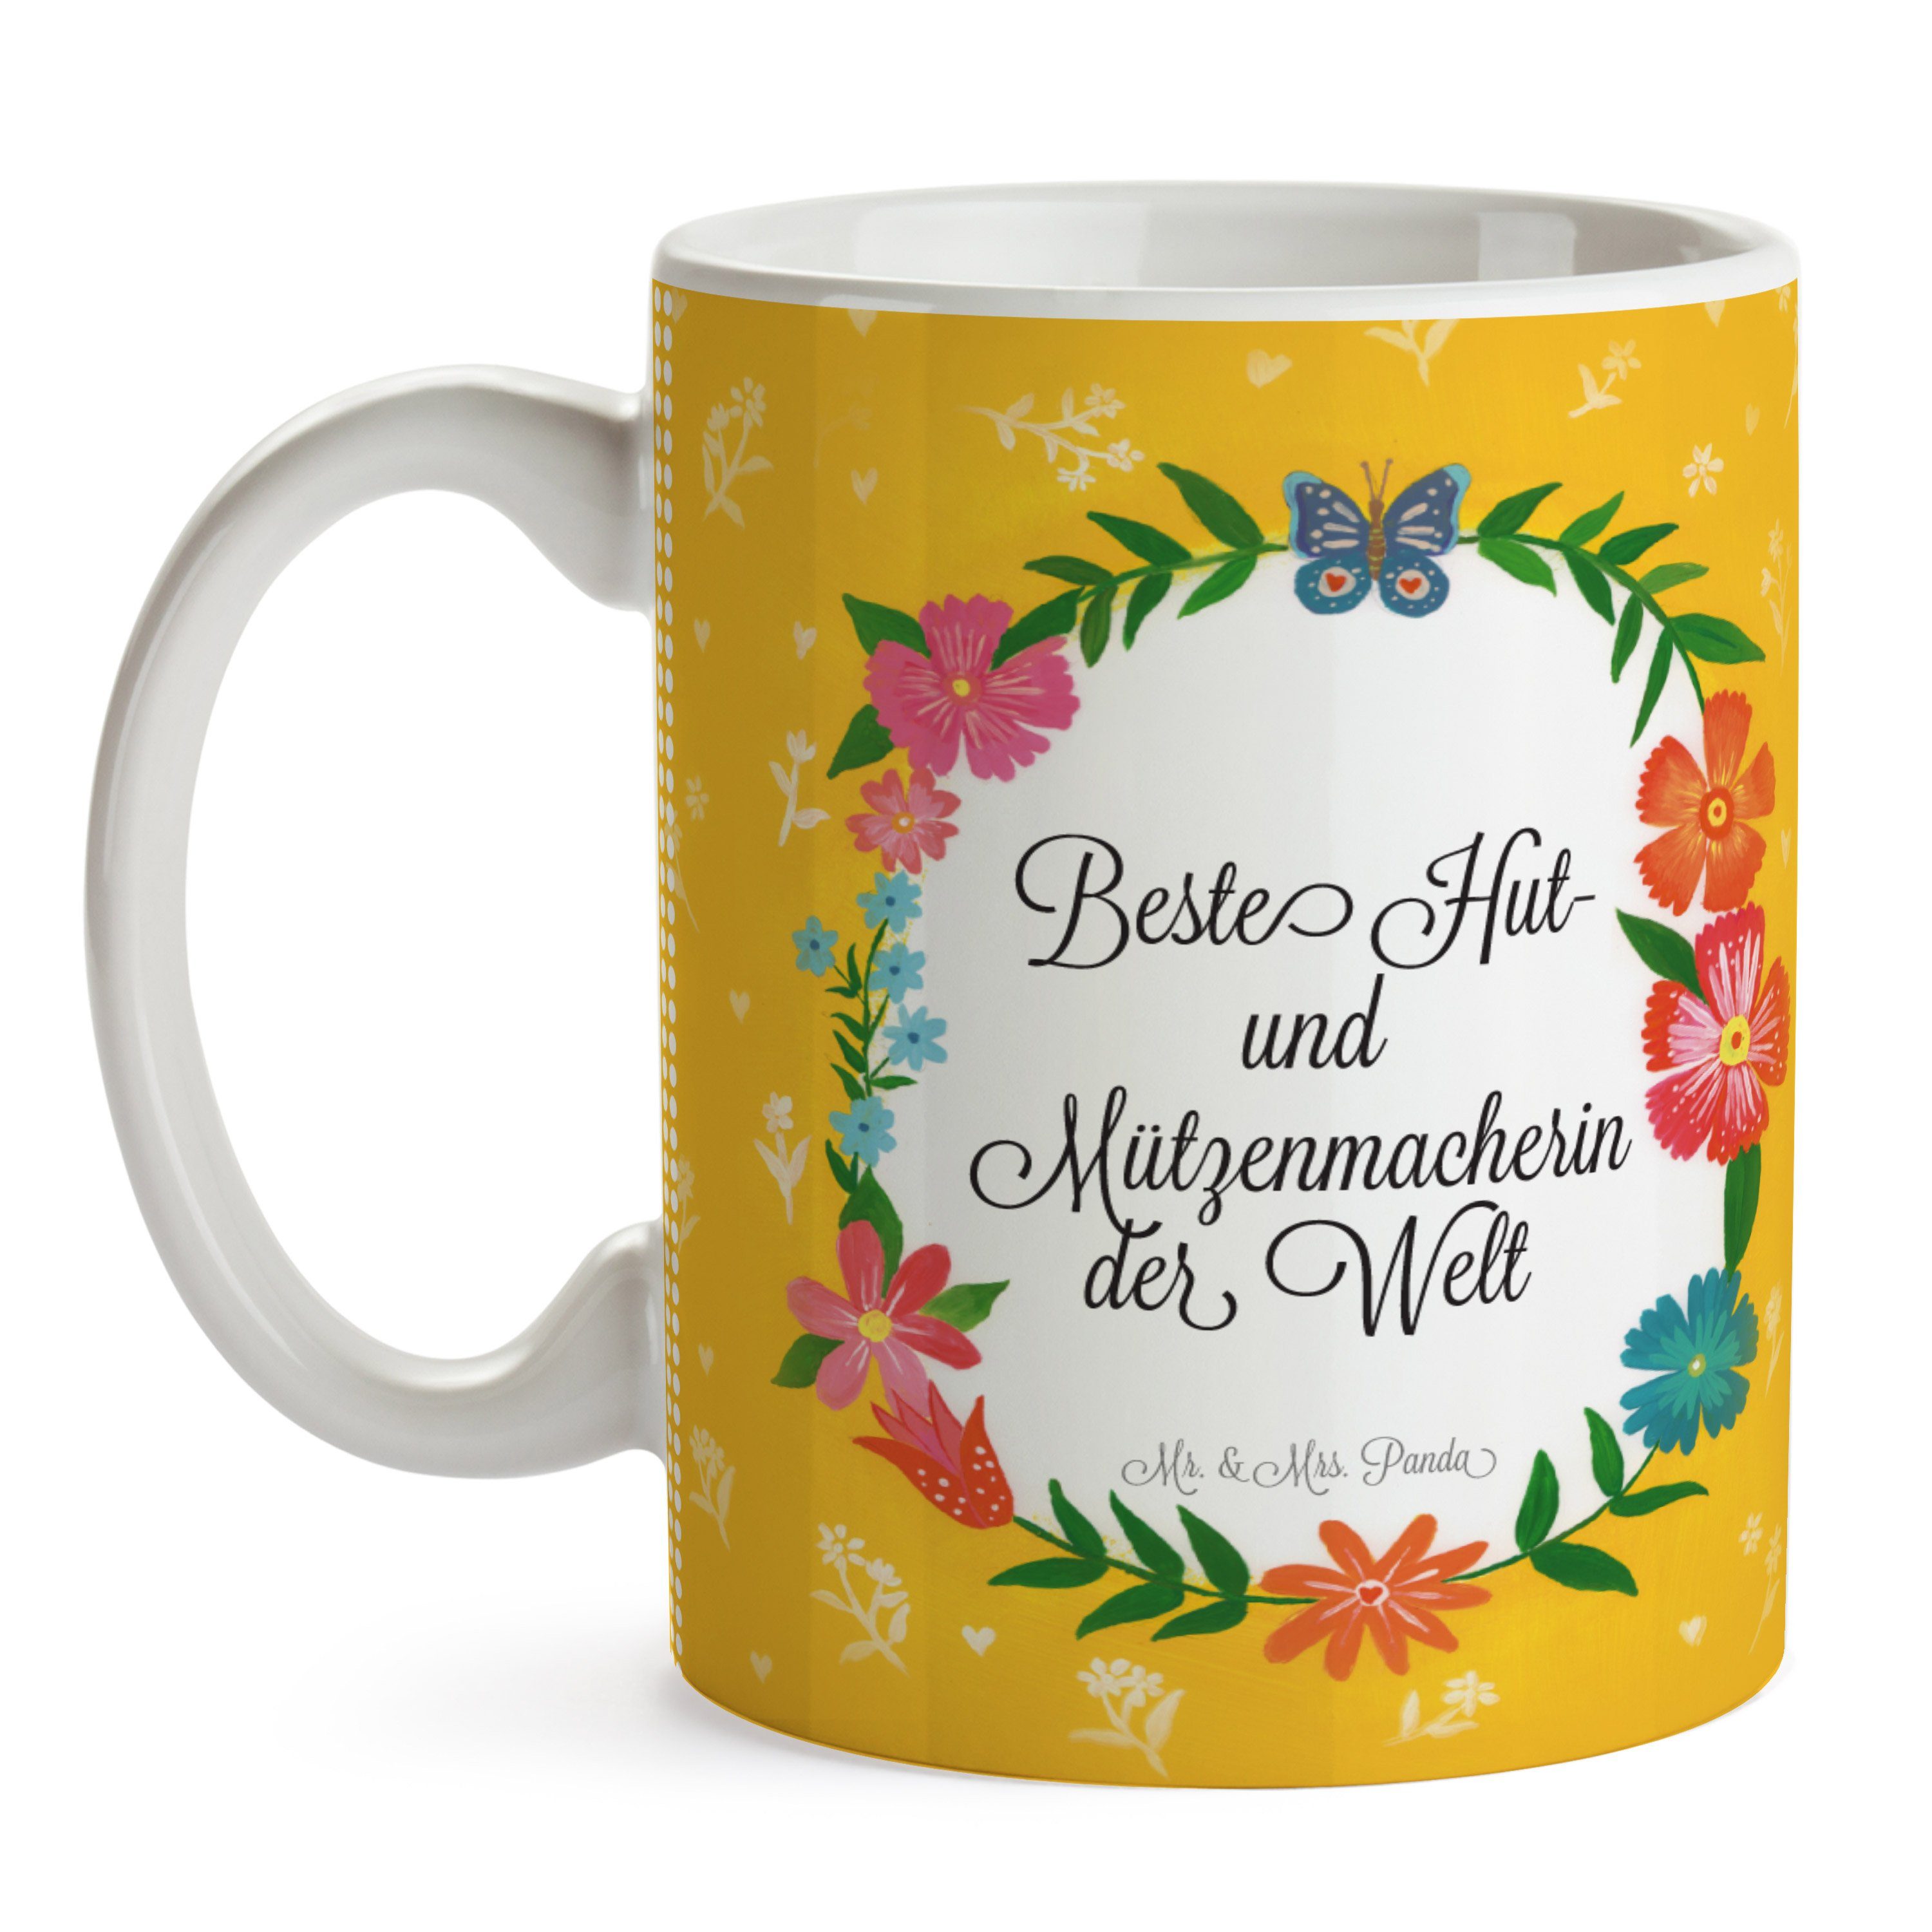 Mr. & Mrs. Hut- Keramik - Geschenk, Motiv, Kaffeebecher, Tasse Mützenmacherin Panda Tasse und Diplom